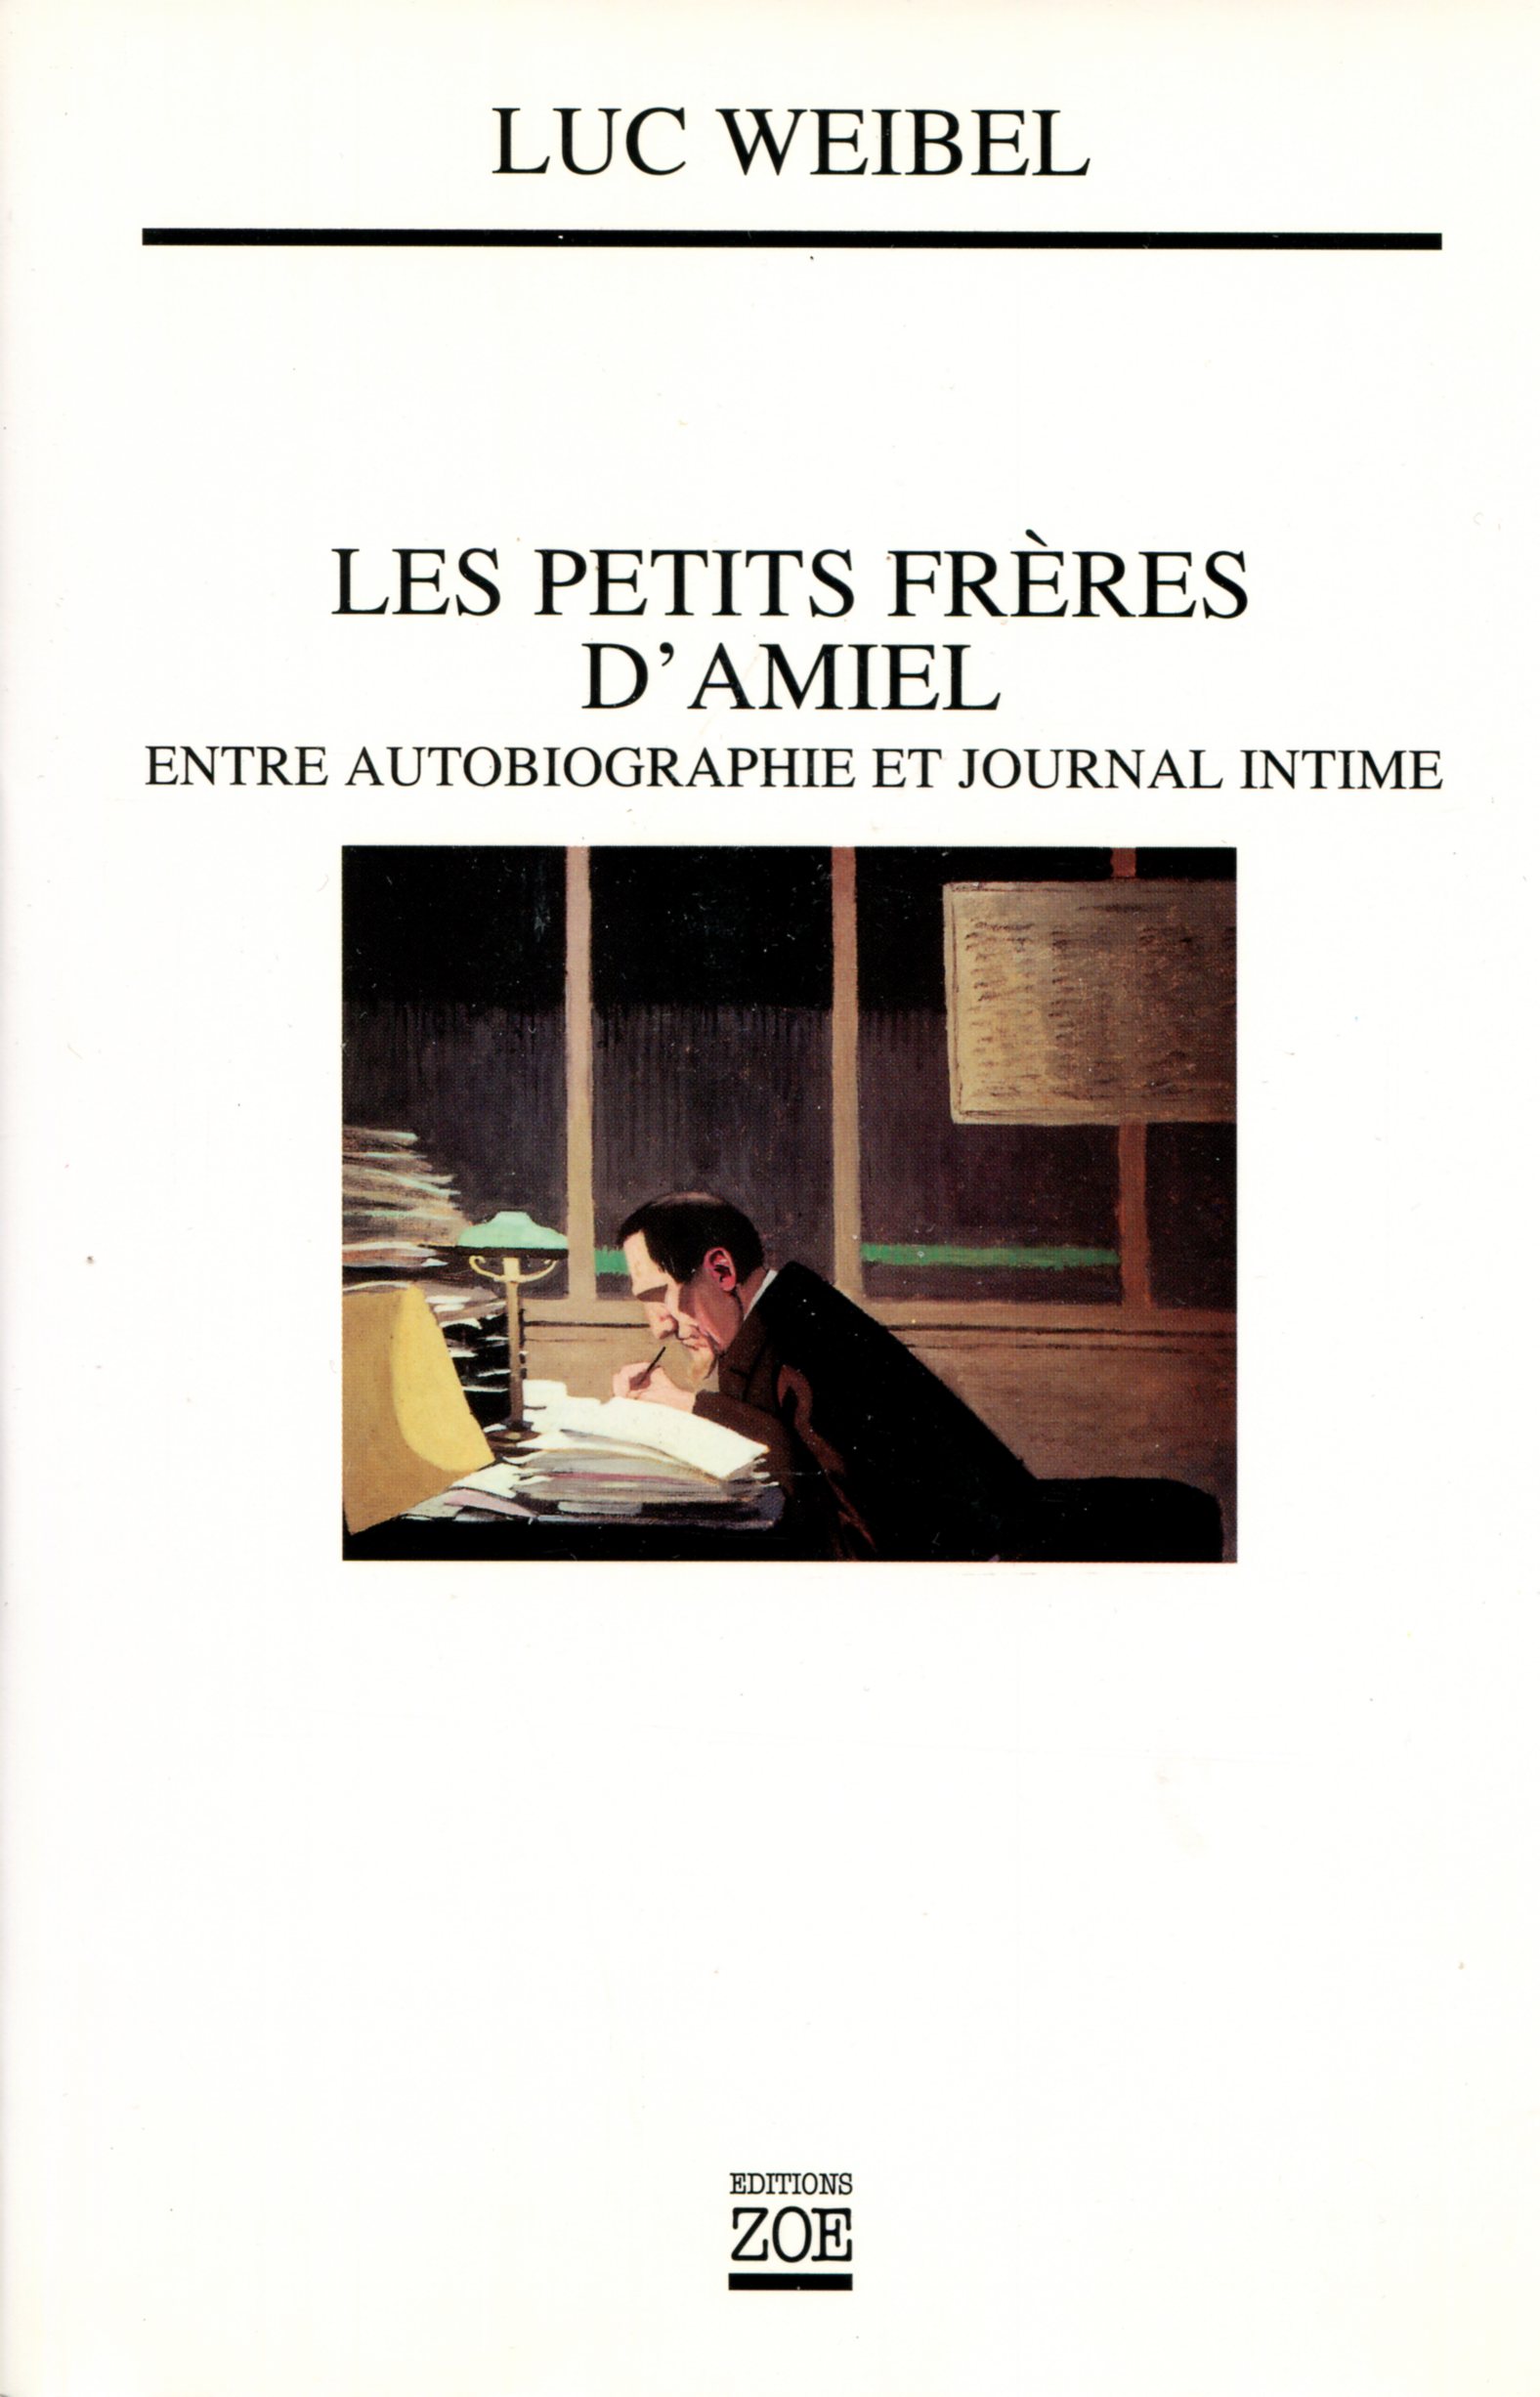 1997 Weibel Luc Les Petits Frères d'Amiel 01.jpg